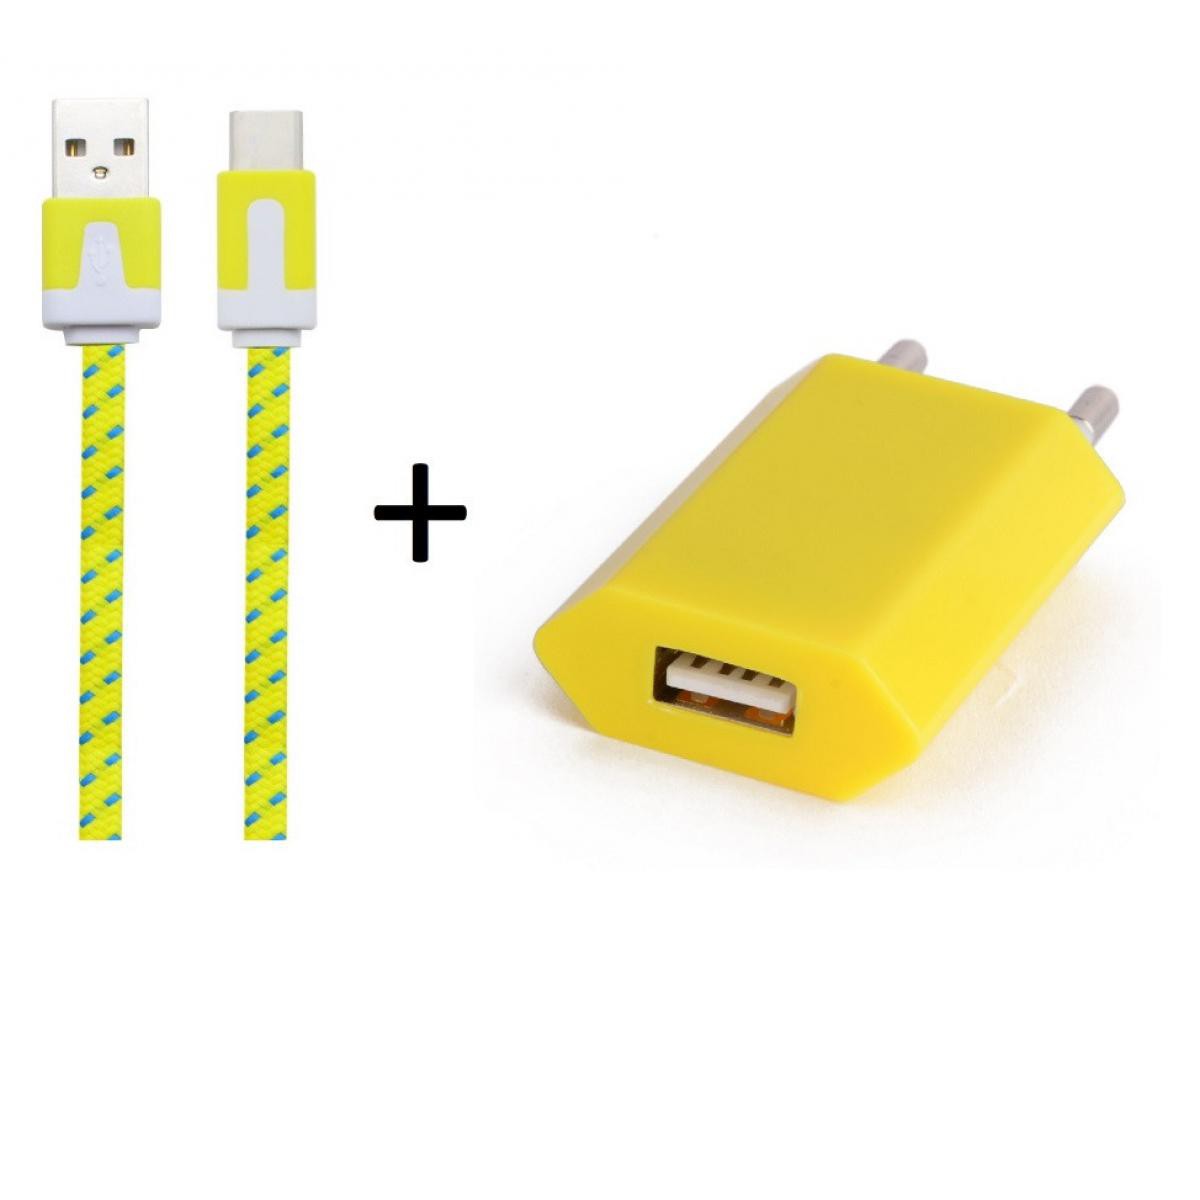 Shot - Pack Chargeur pour "WIKO View 5 Plus" Smartphone Type C (Cable Noodle 1m Chargeur + Prise Secteur USB) Murale Android (JAUNE) - Chargeur secteur téléphone